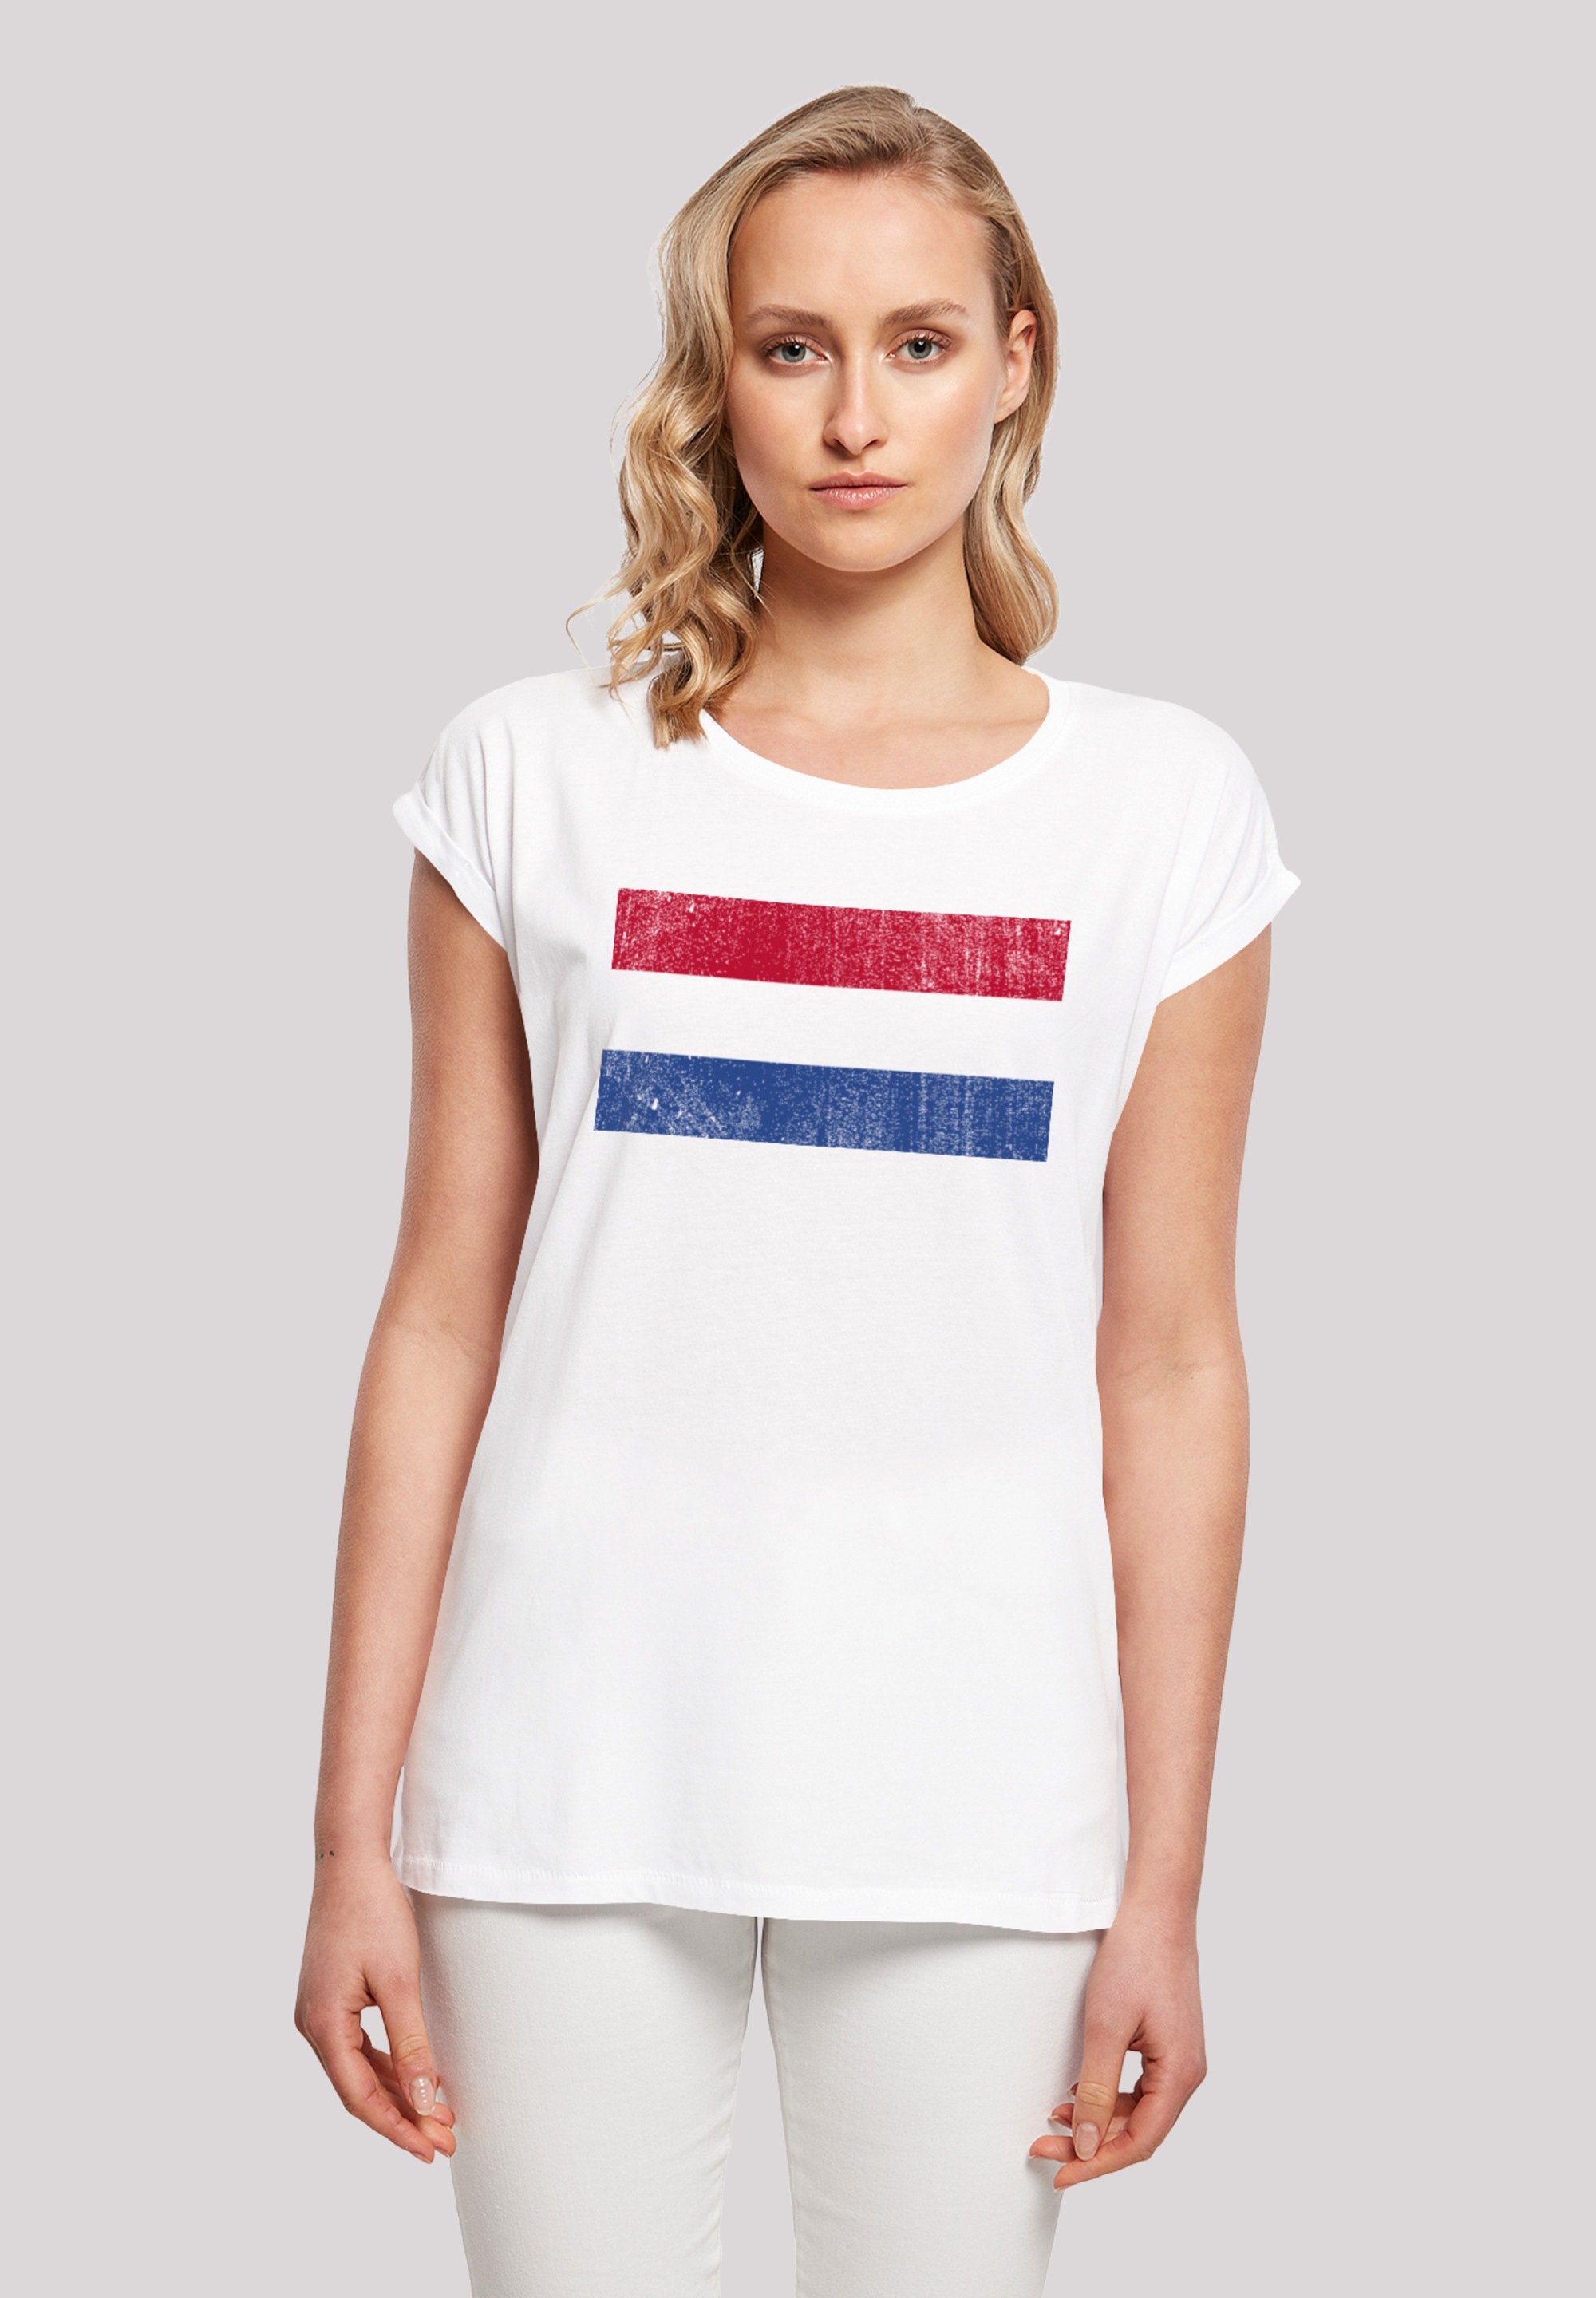 für Holland »Netherlands Keine Angabe BAUR T-Shirt bestellen Flagge F4NT4STIC | NIederlande distressed«,